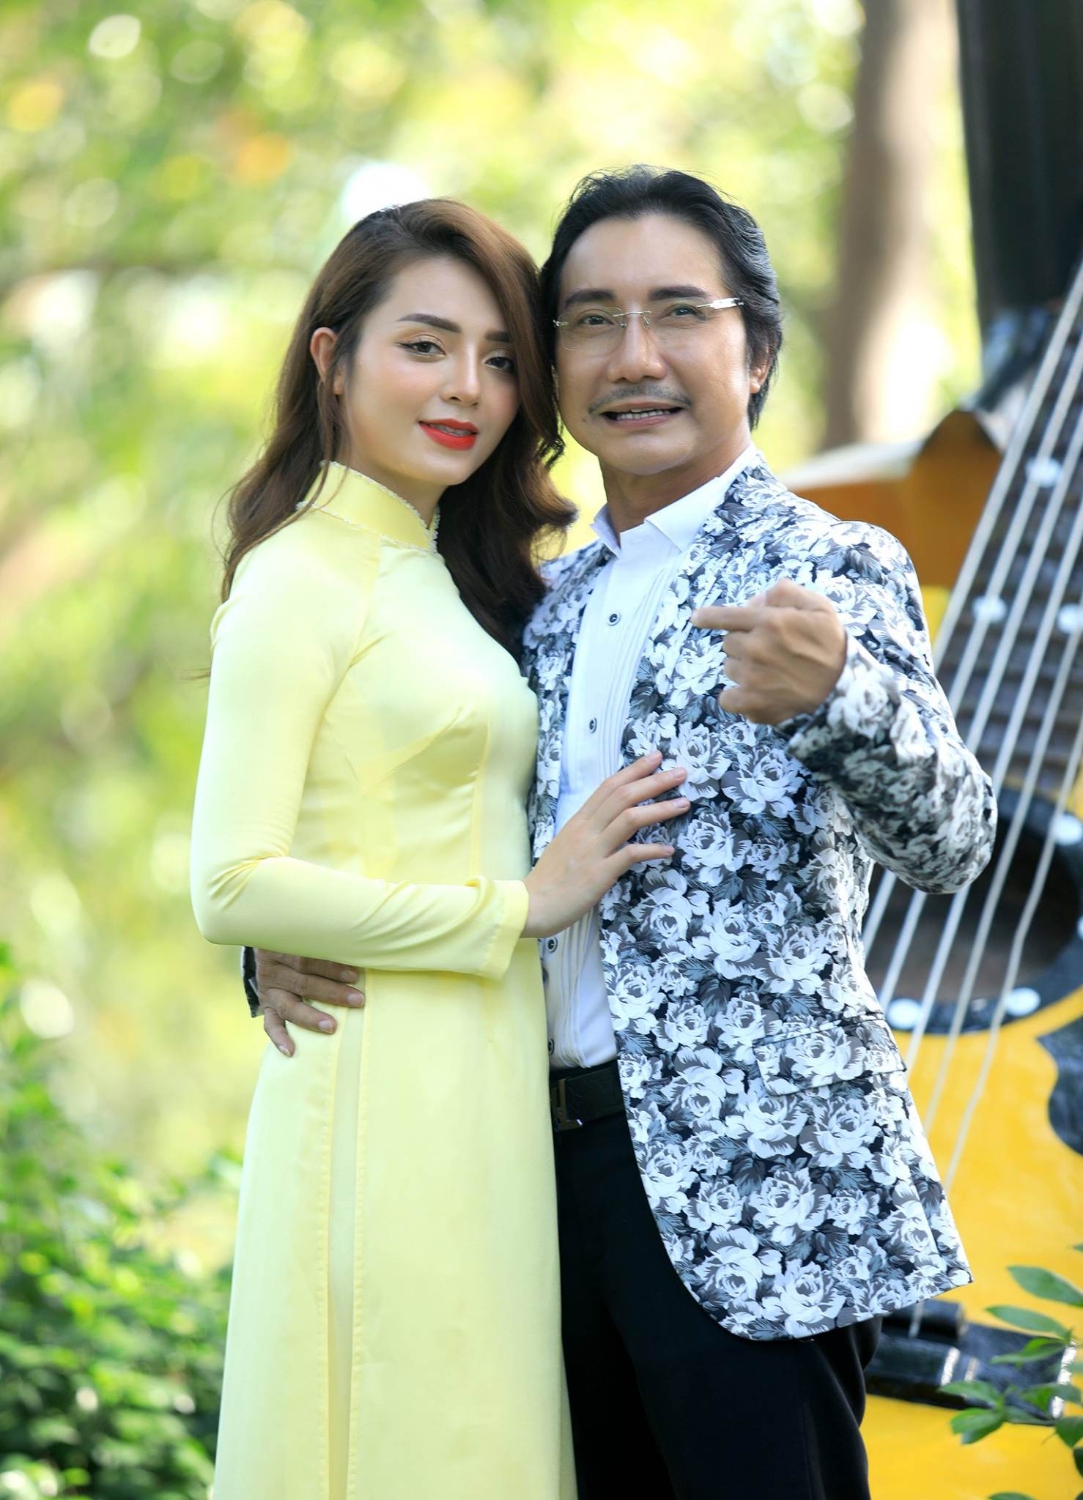 Nữ ca sĩ Việt lấy chồng nhạc sĩ hơn 26 tuổi từng qua 3 đời vợ, ở nhà thuê nhưng vẫn hạnh phúc bên nhau - ảnh 1